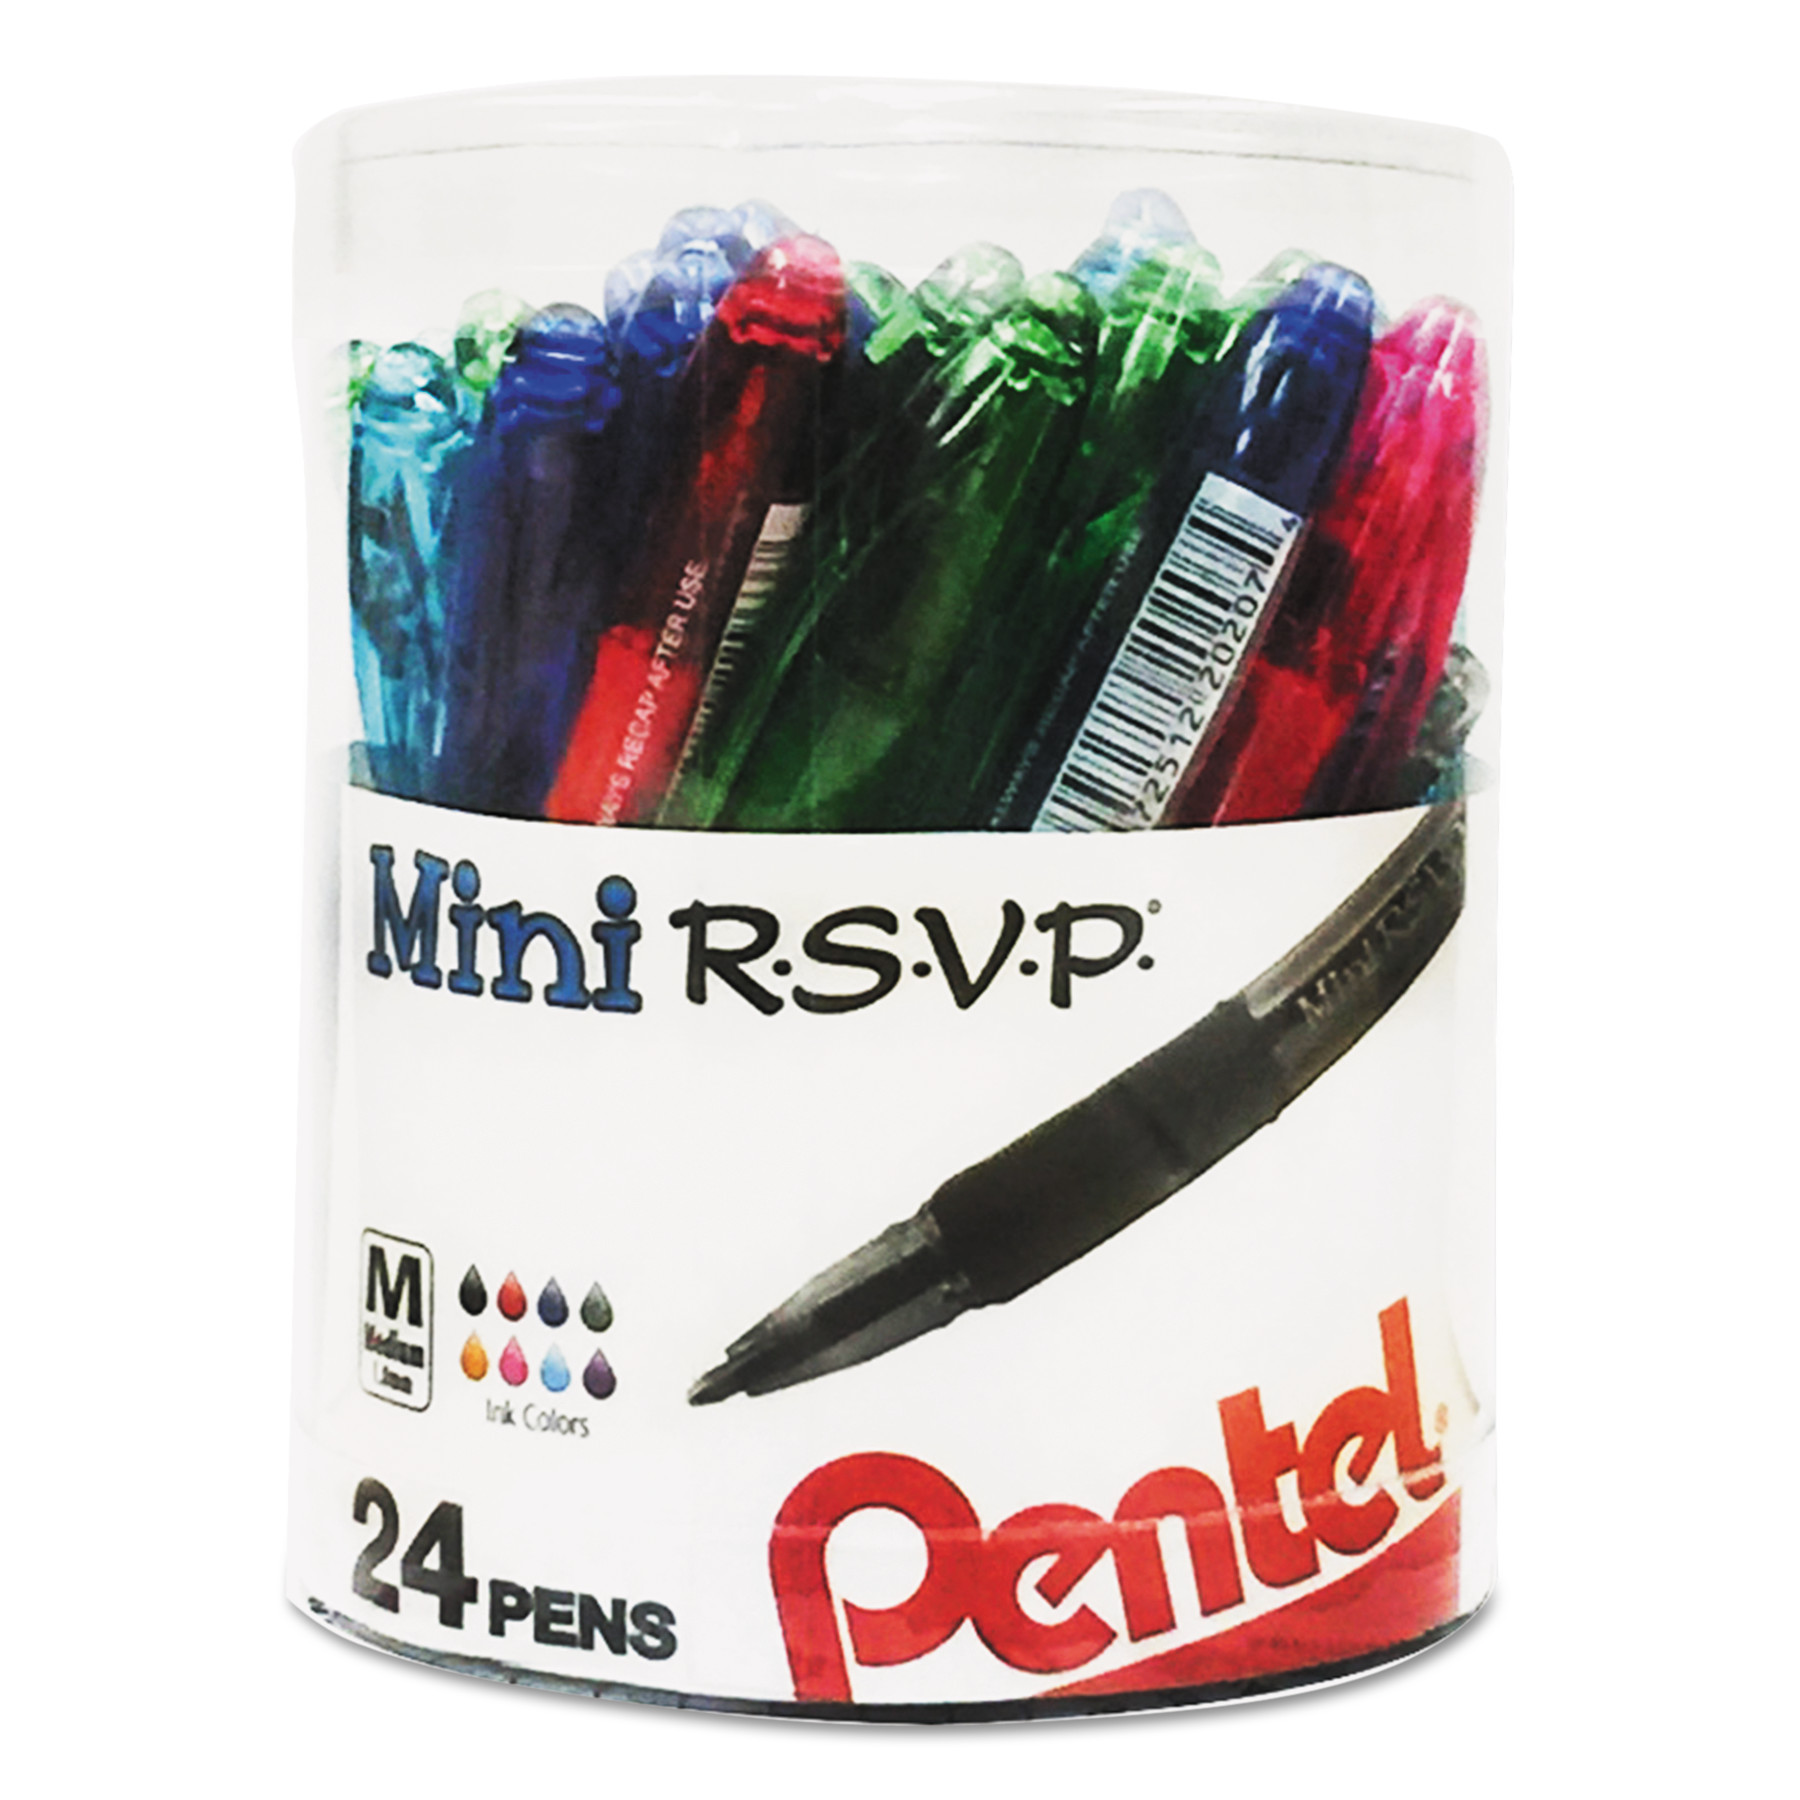 R.S.V.P. Mini Ballpoint Pens, 24-pack